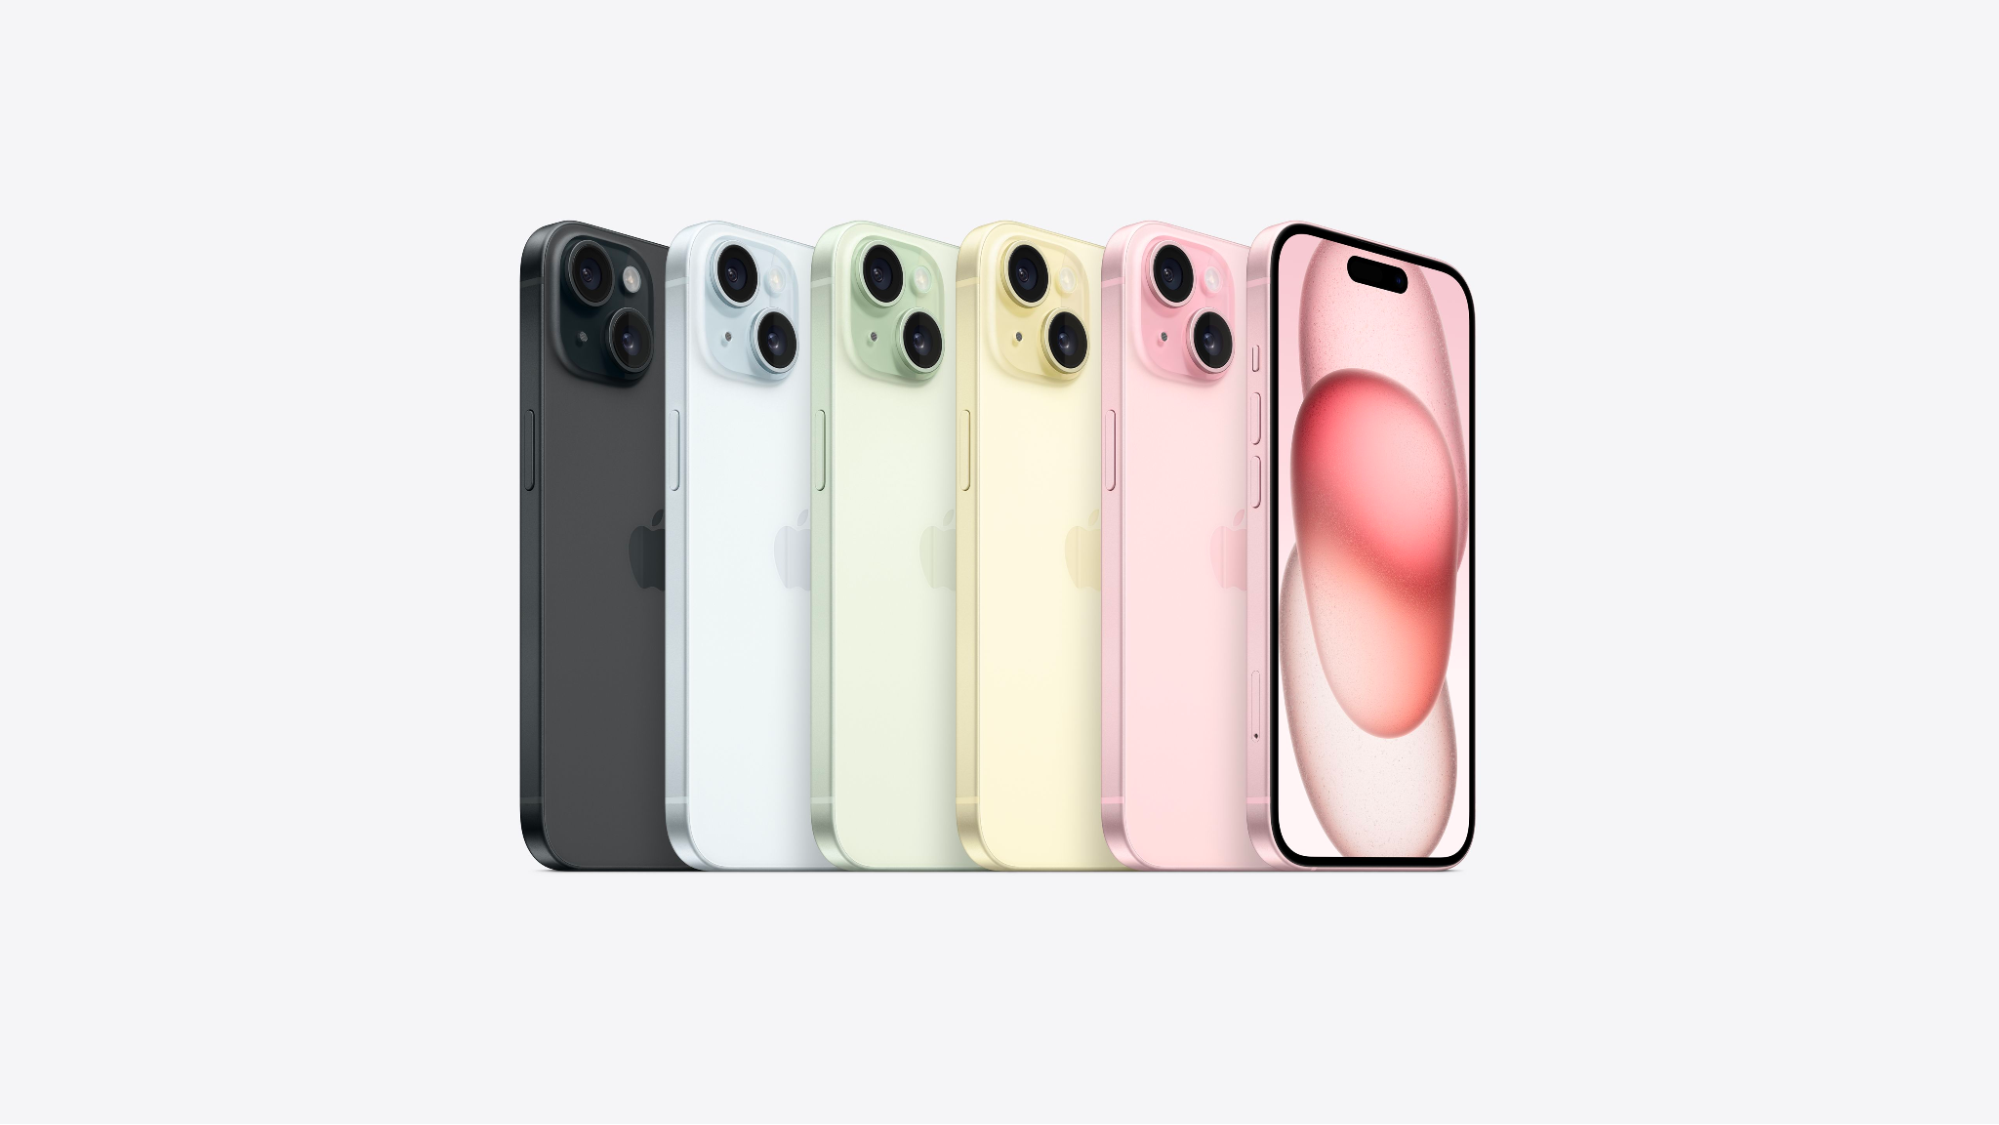 Giá các phiên bản màu sắc khác nhau trong iPhone 15 và iPhone 15 Plus không có sự khác biệt theo công bố của Apple